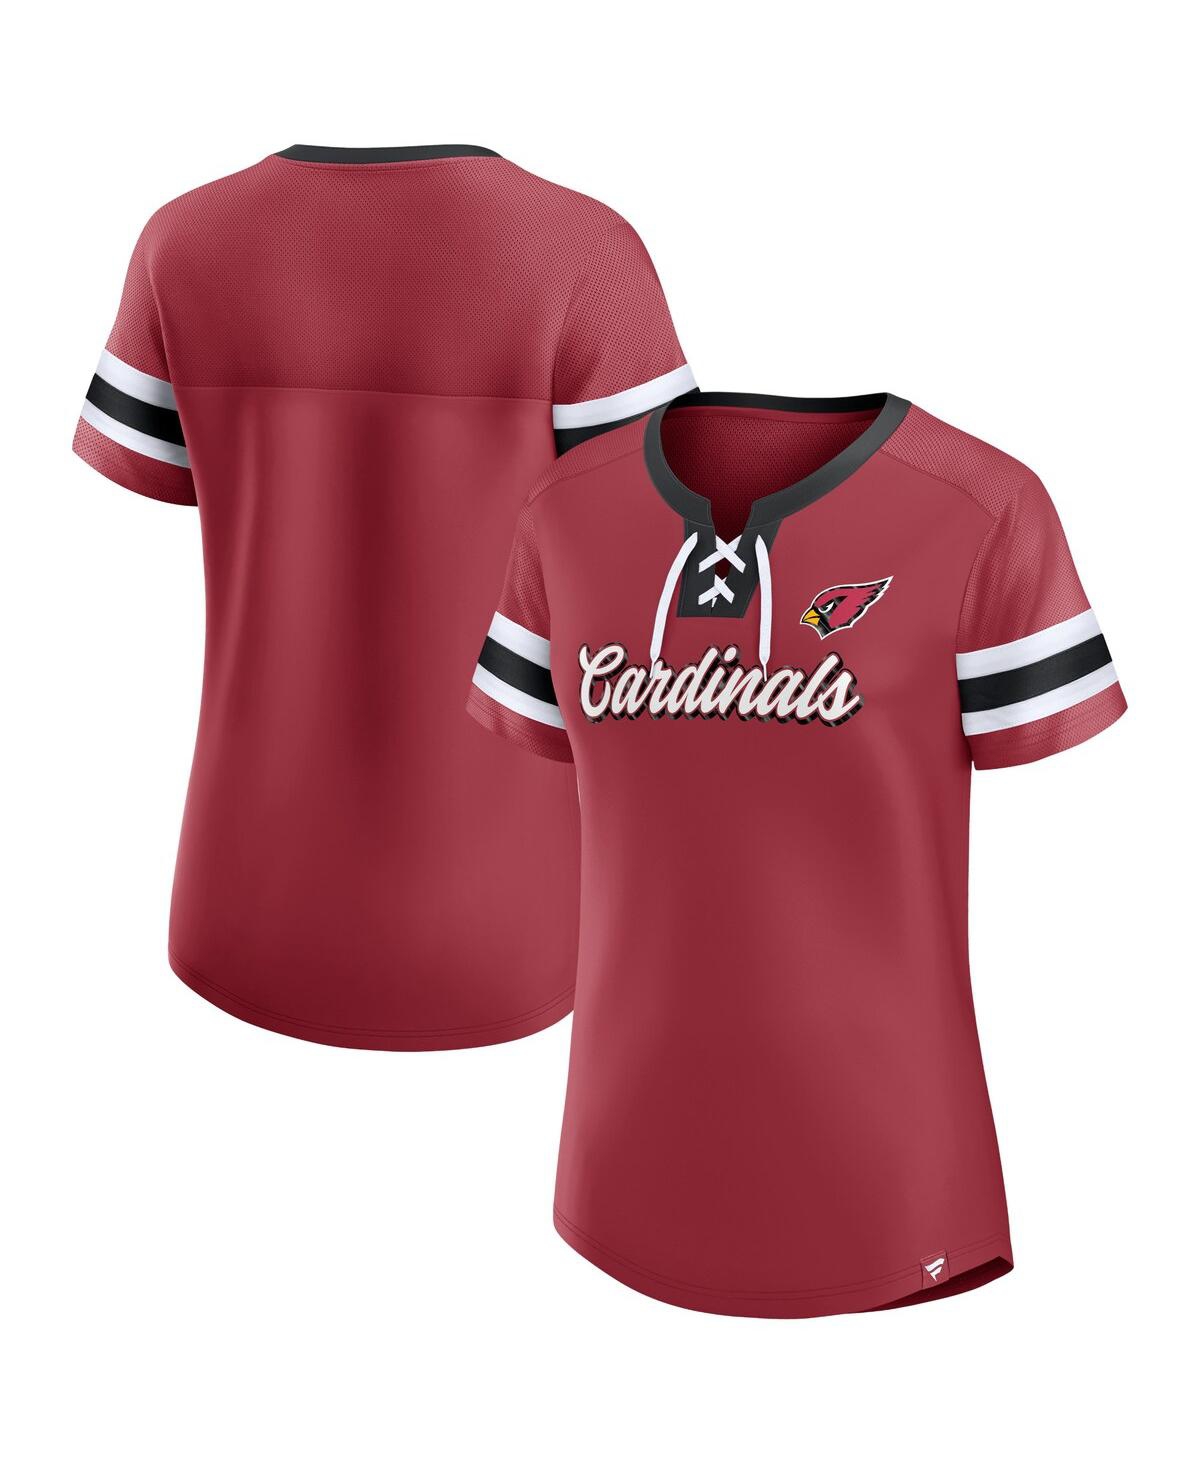 Shop Fanatics Women's  Cardinal Arizona Cardinals Original State Lace-up T-shirt